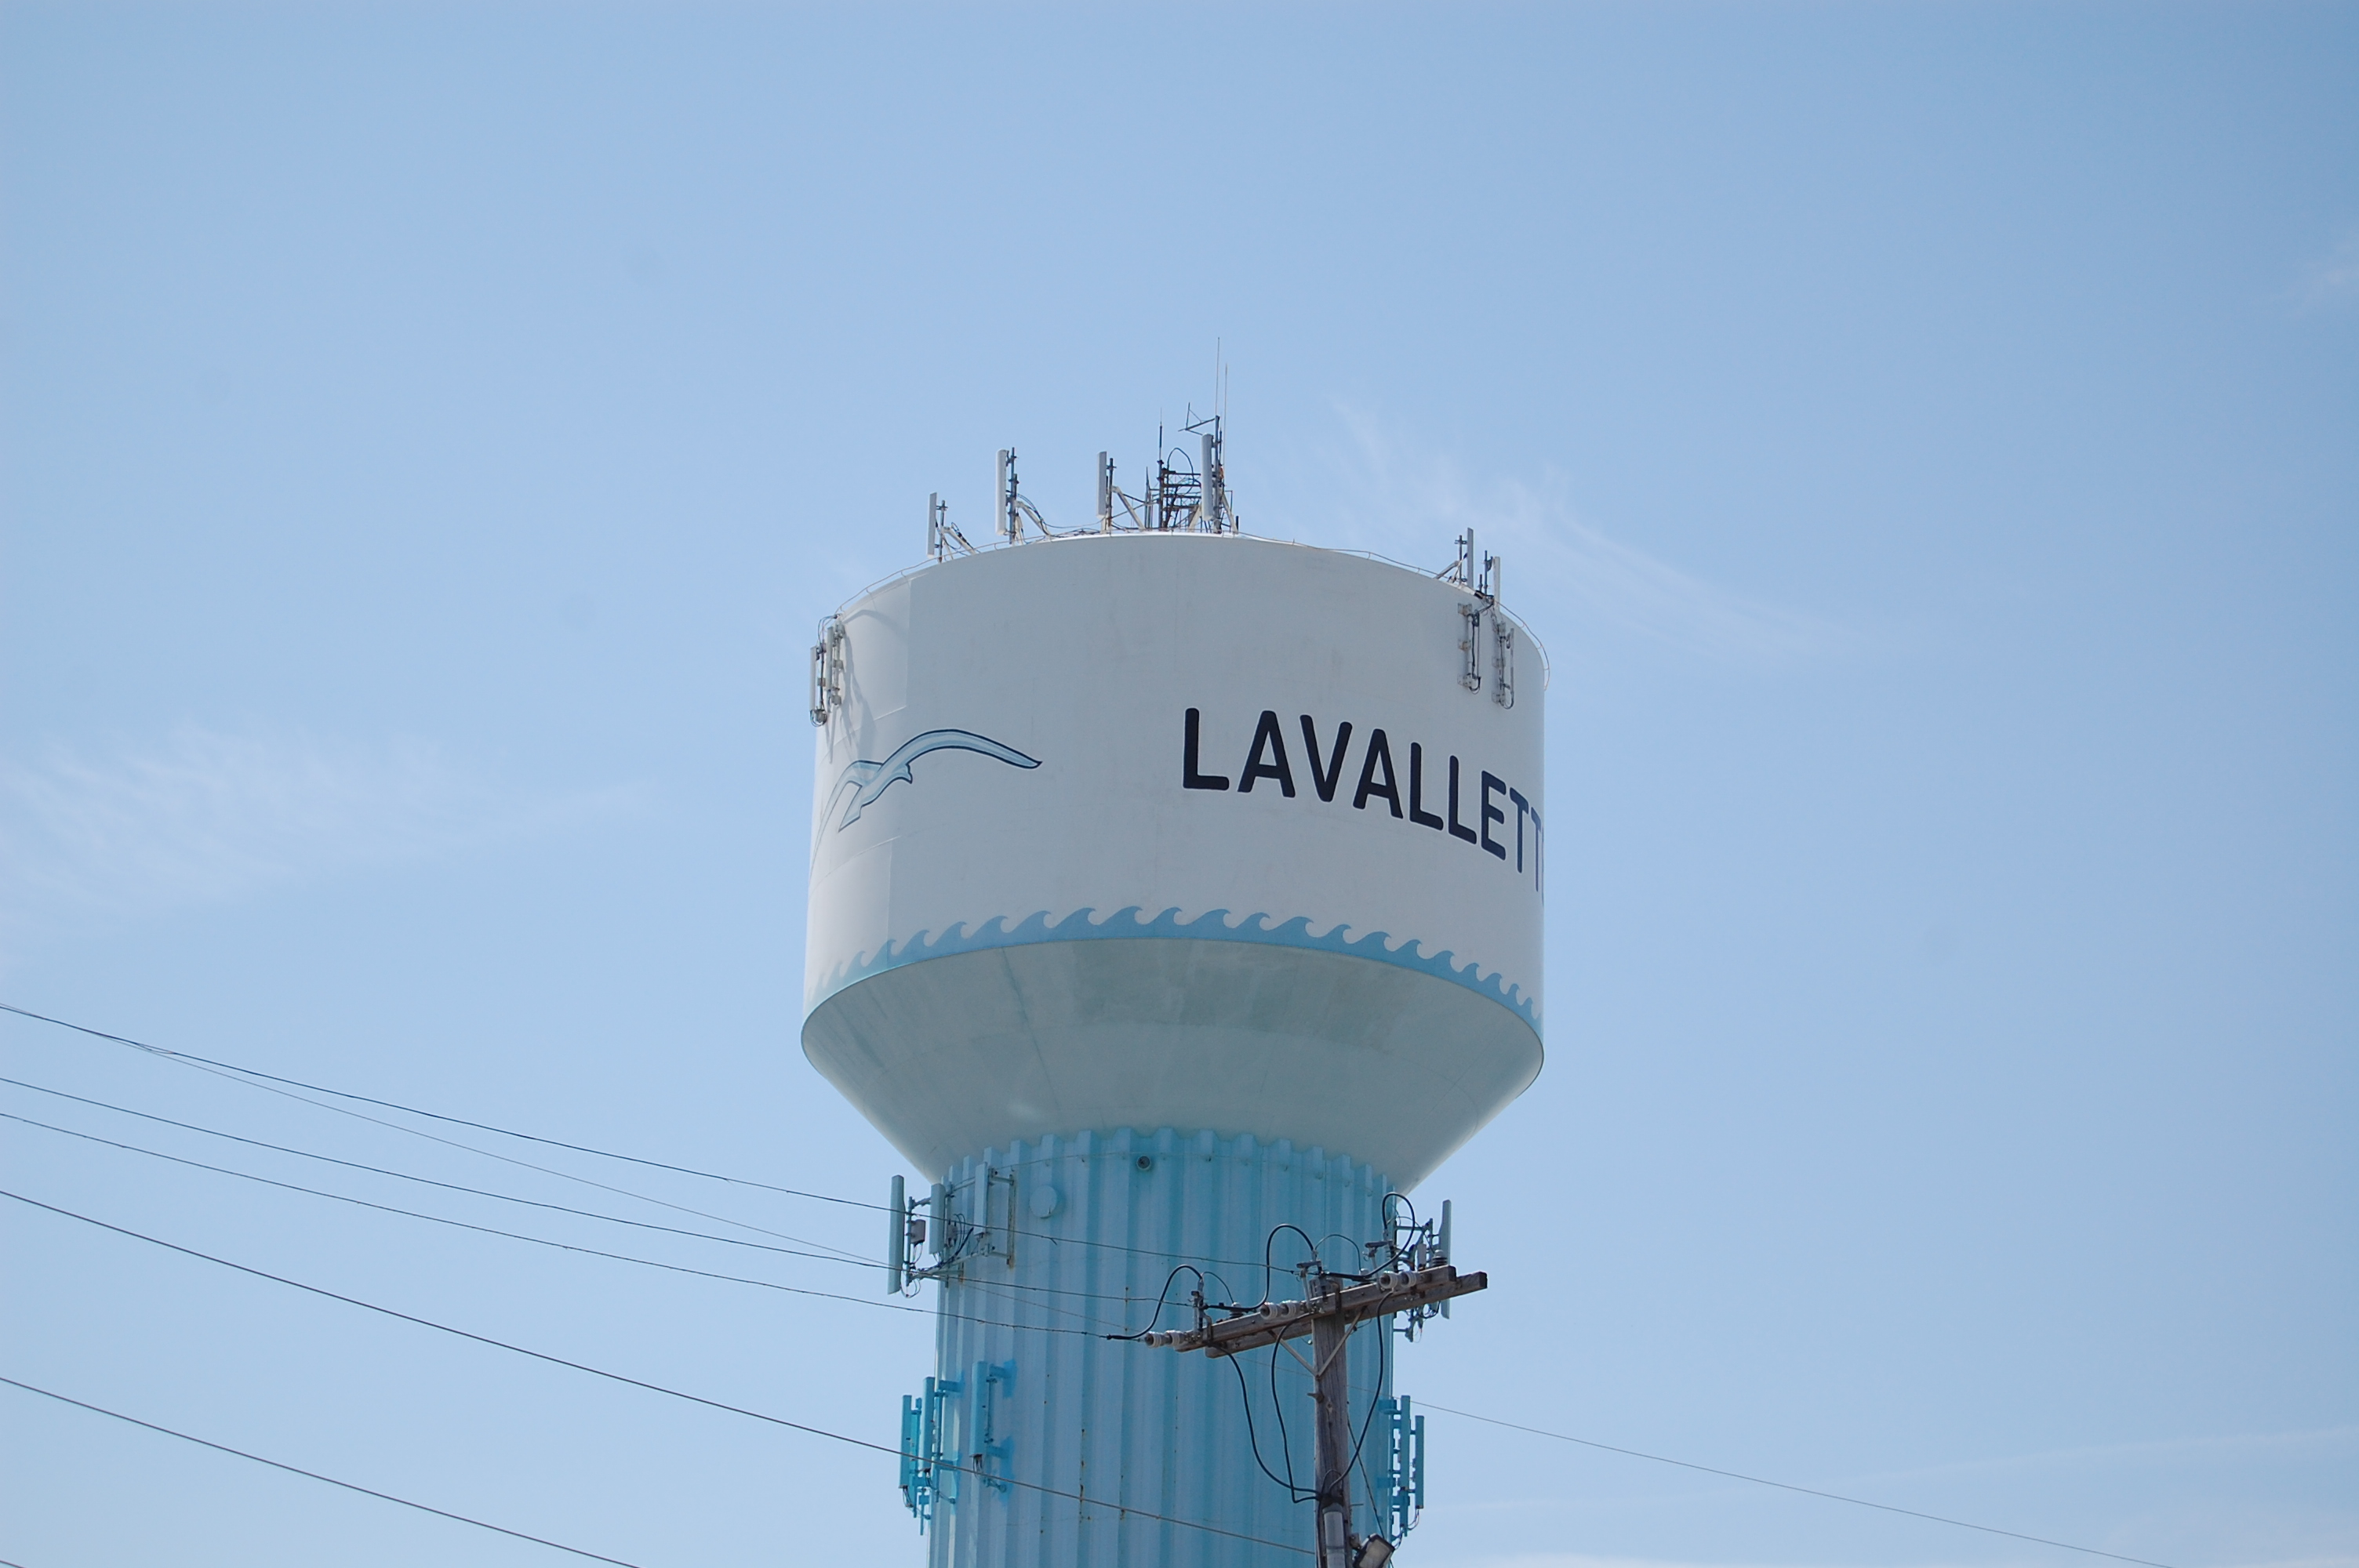 Lavallette water tower. (Photo: Daniel Nee)